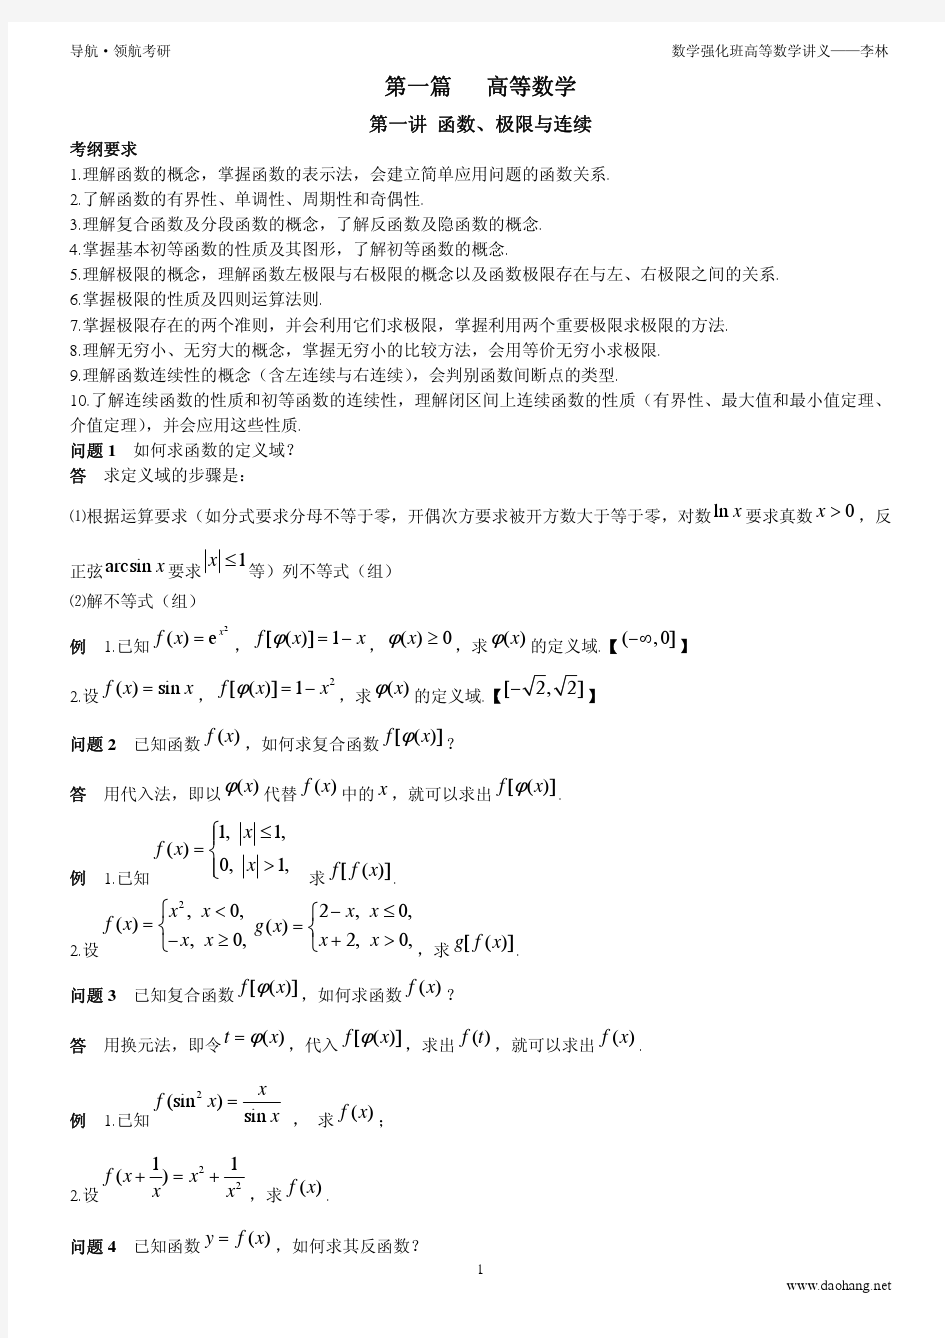 李林-2014强化-高等数学讲义